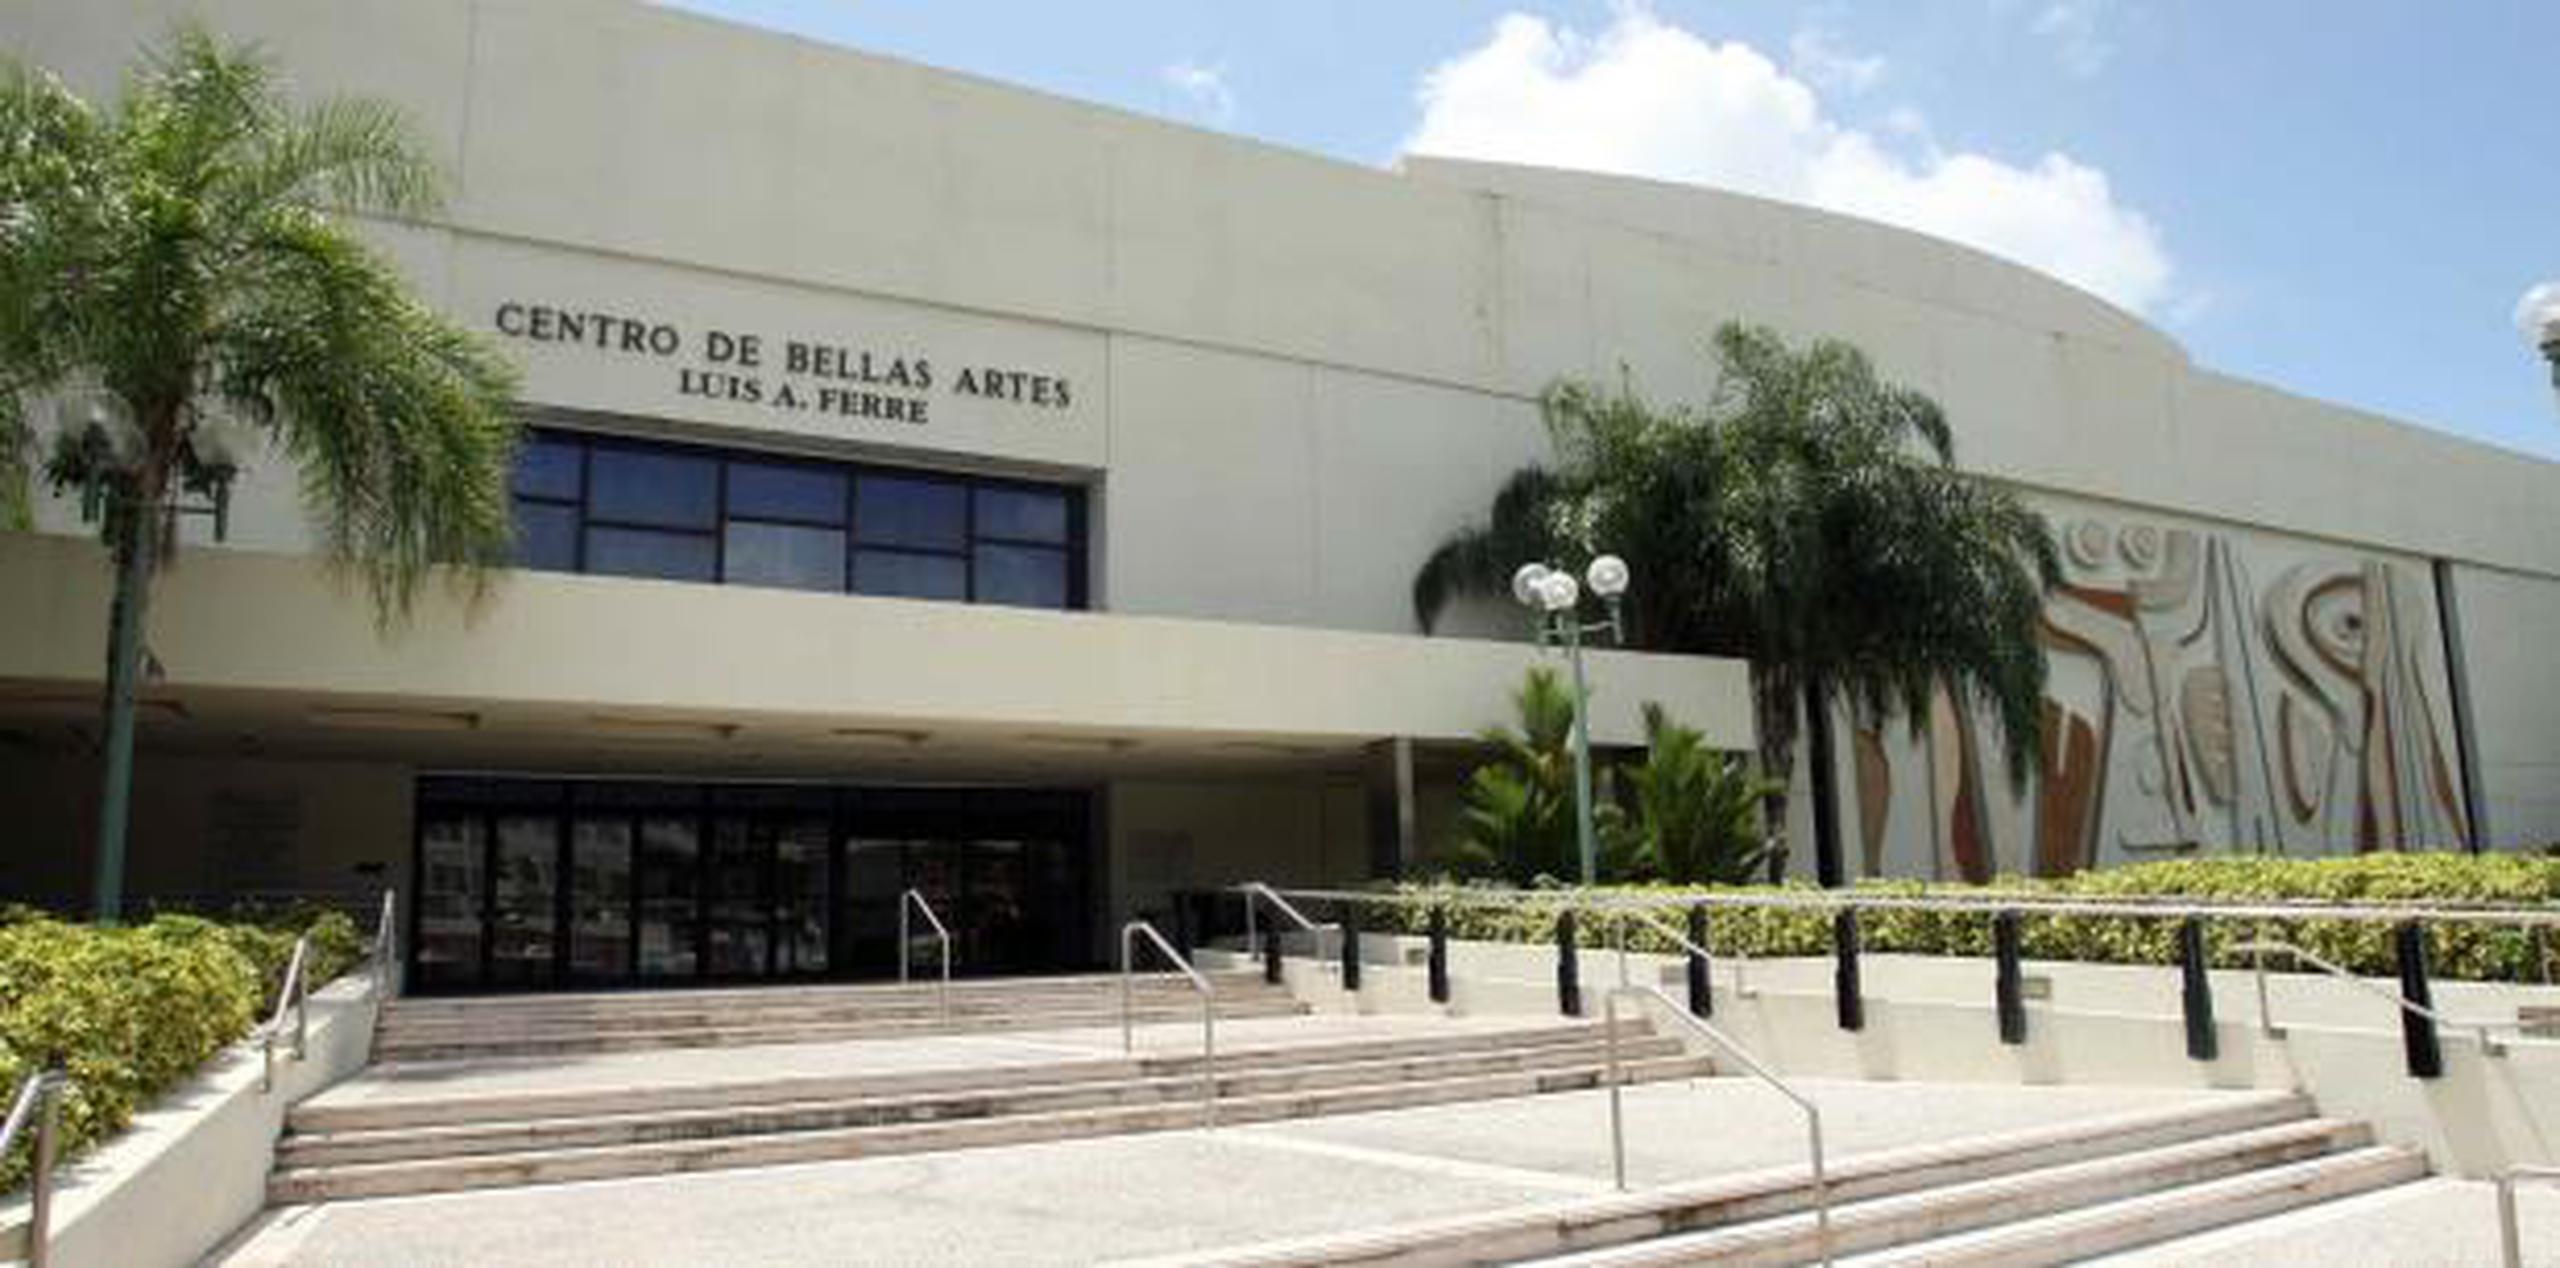 El Centro de Bellas Artes de San Juan ha invertido $800 mil para los trabajos de restauración y limpieza post huracán. (Archivo)